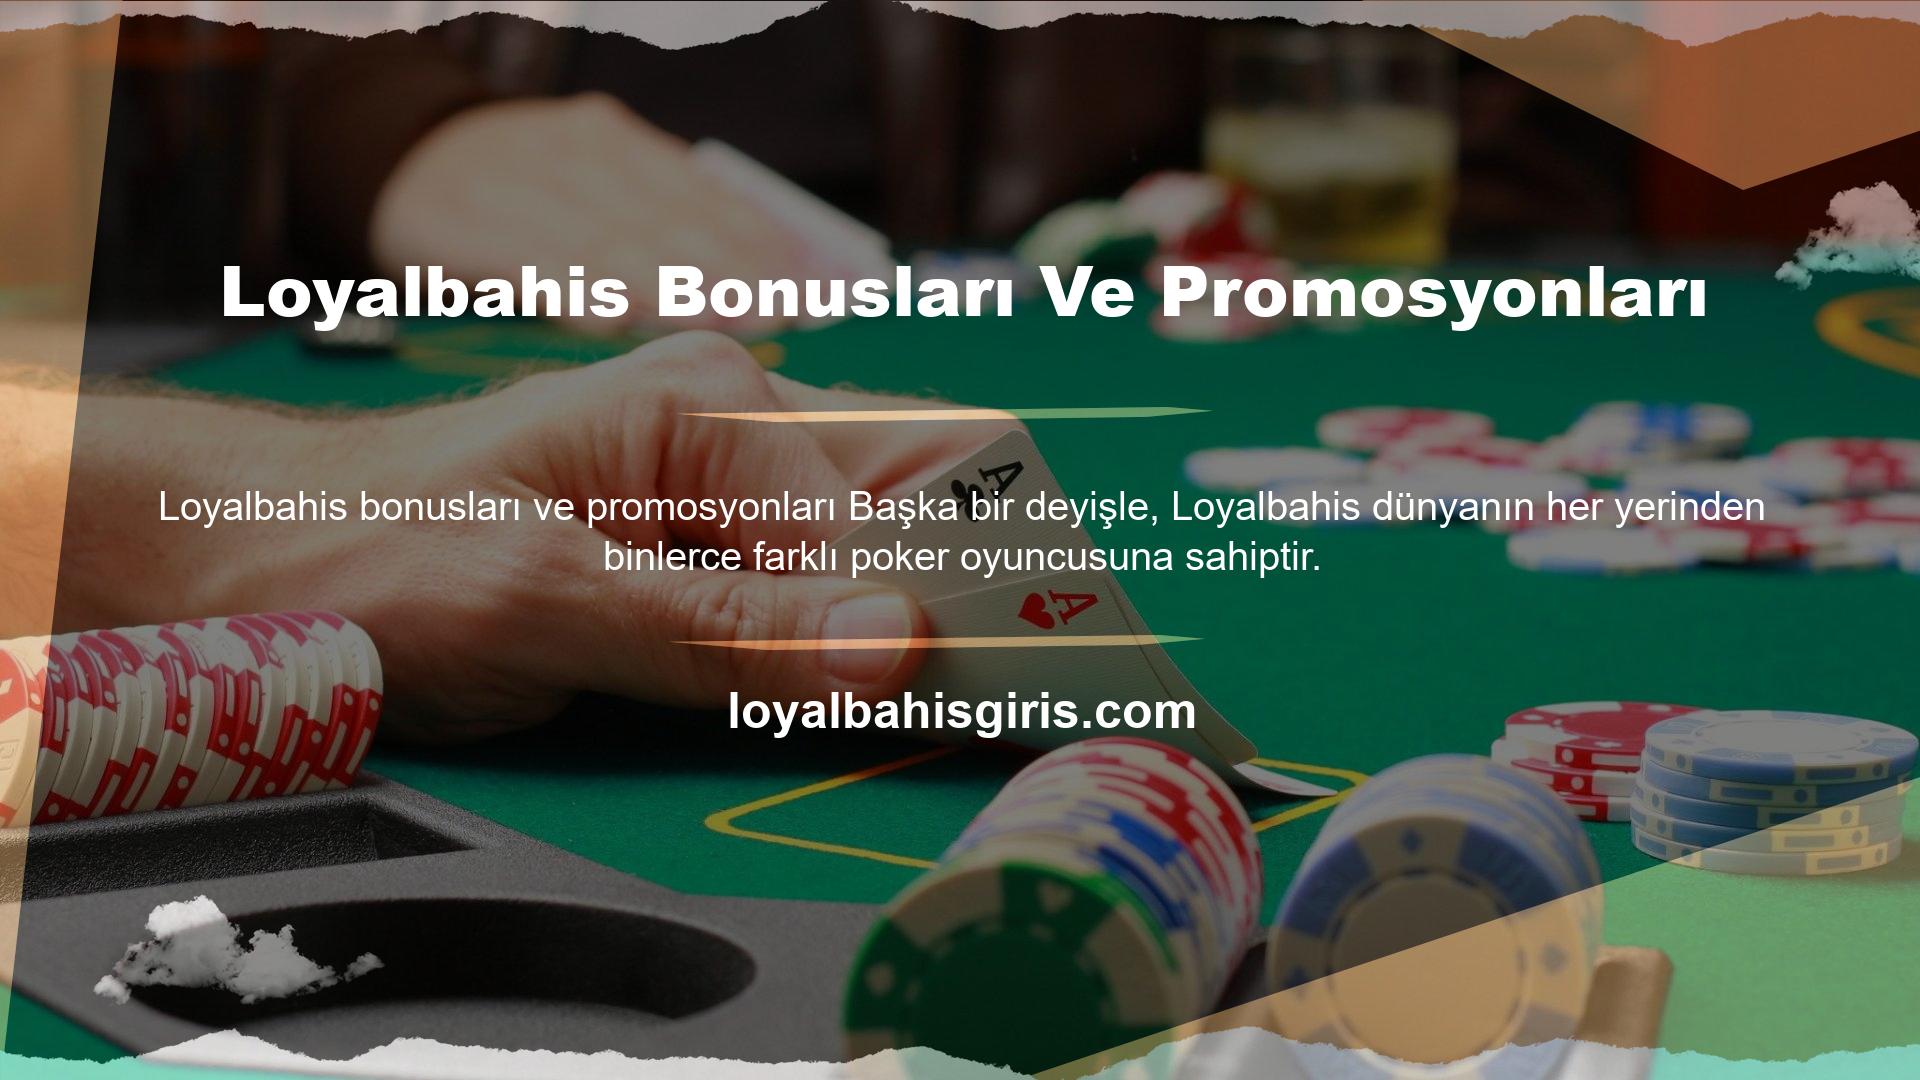 Ayrıca Loyalbahis bahis sitesi tüm kullanıcılar için bonuslar ve promosyonlar eklemiştir